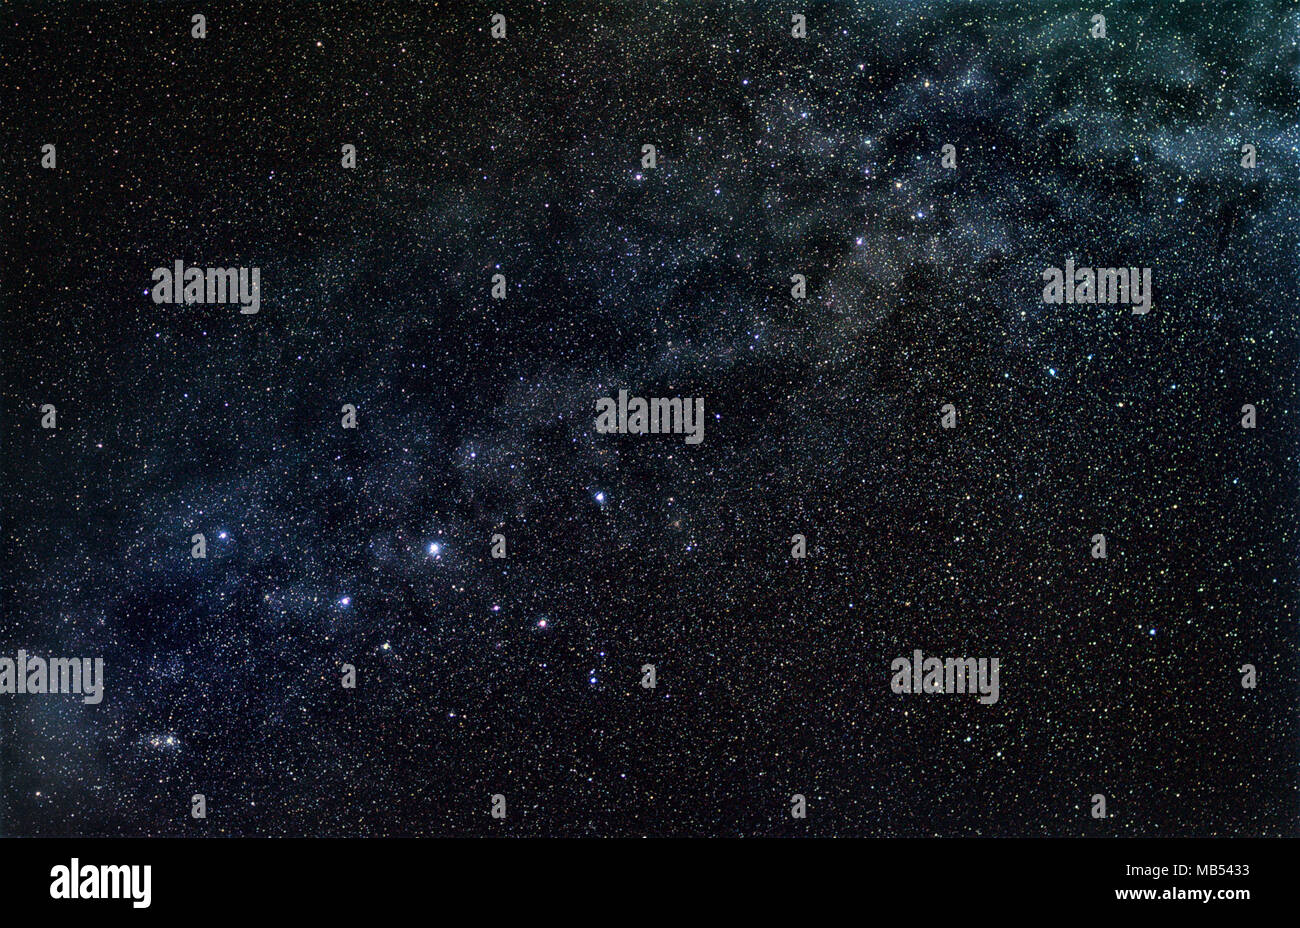 Constellation de Cassiopée avec bande stellaire de notre galaxie, la Voie Lactée, dans l'obscurité du ciel étoilé Banque D'Images